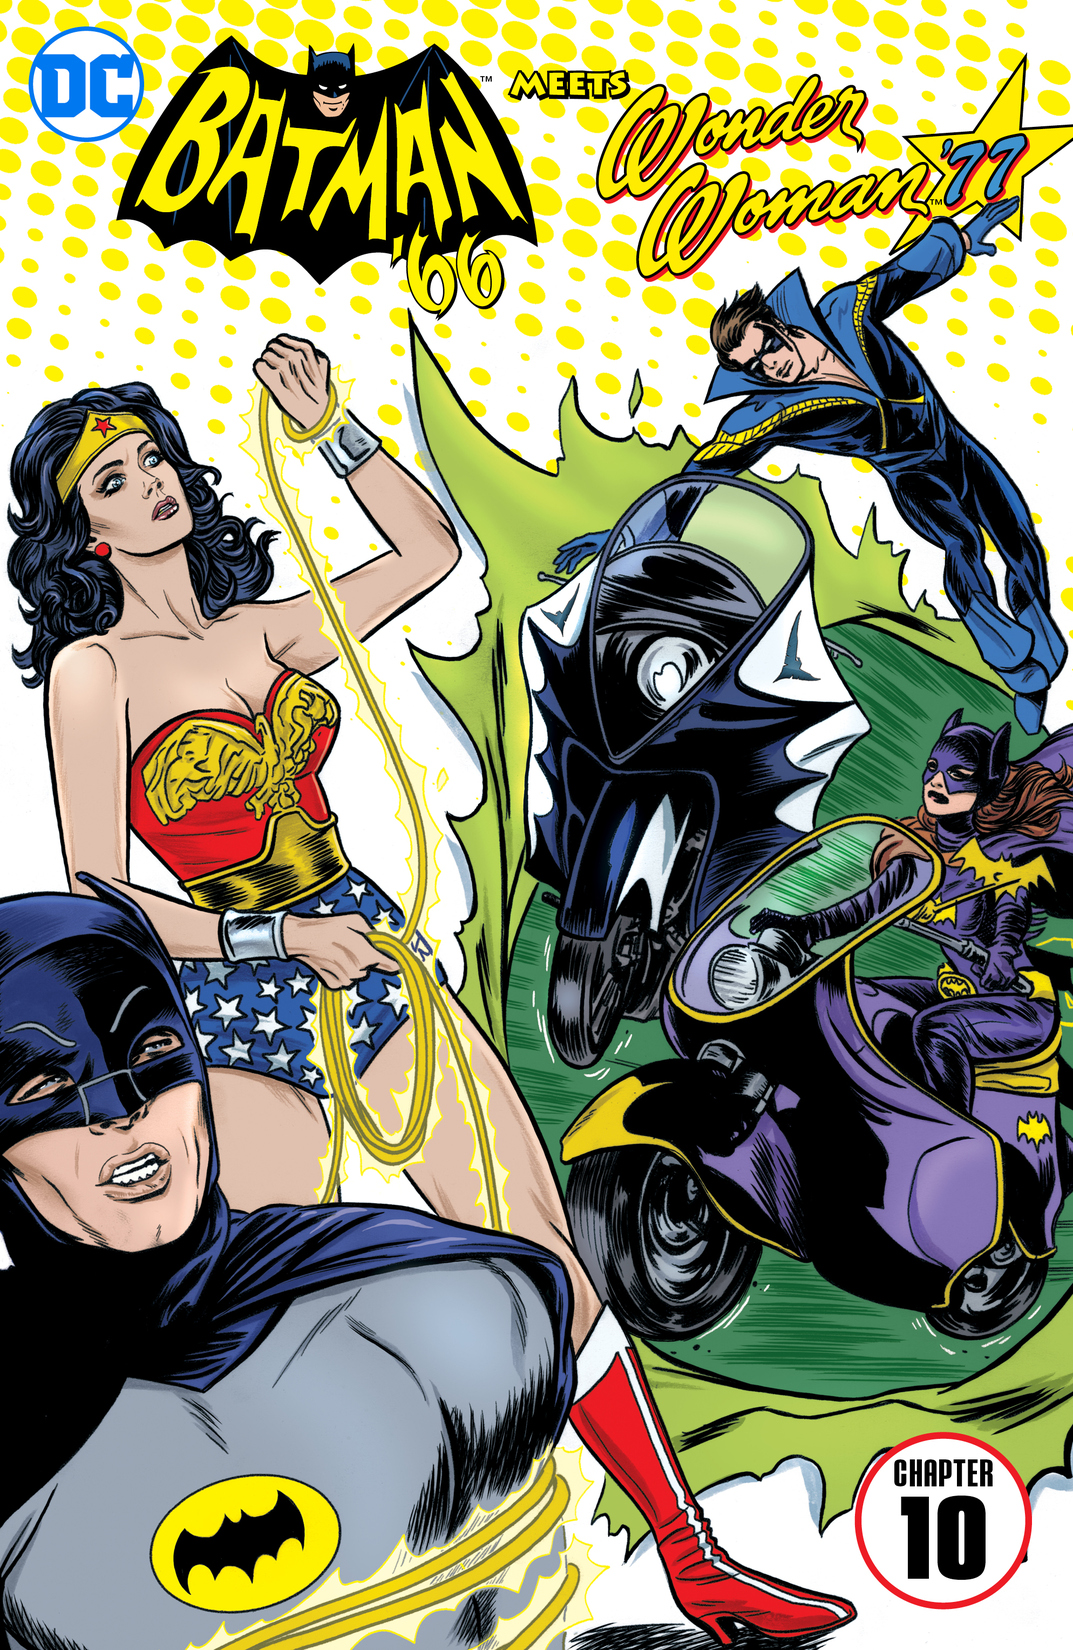 Batman '66 Meets Wonder Woman '77 #10 preview images